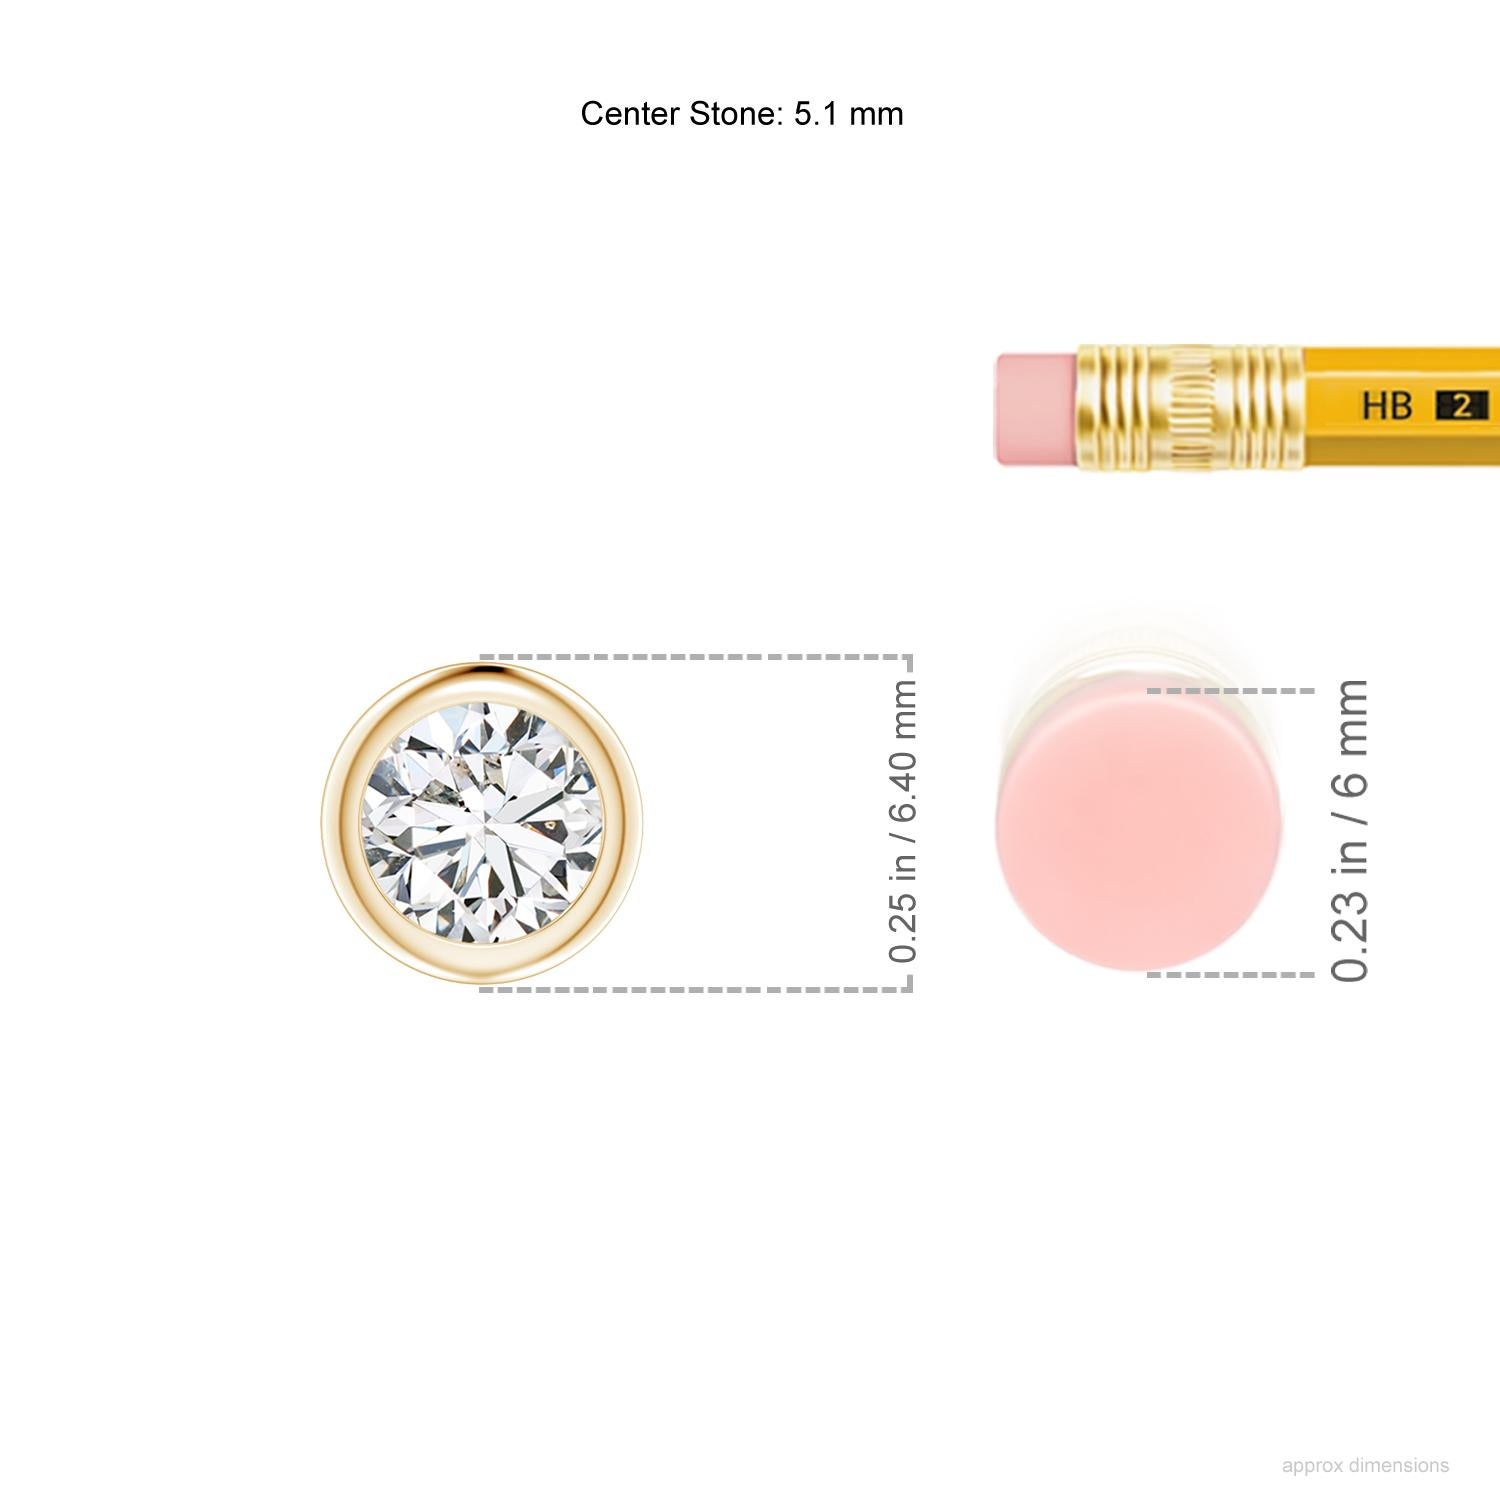 Dieser klassische Solitär-Diamantanhänger hat ein wunderschönes Design, bei dem der Mittelstein an der Kette zu schweben scheint. Der funkelnde Diamant ist in einer Lünette gefasst. Dieser runde Diamantanhänger aus 14-karätigem Gelbgold ist ein